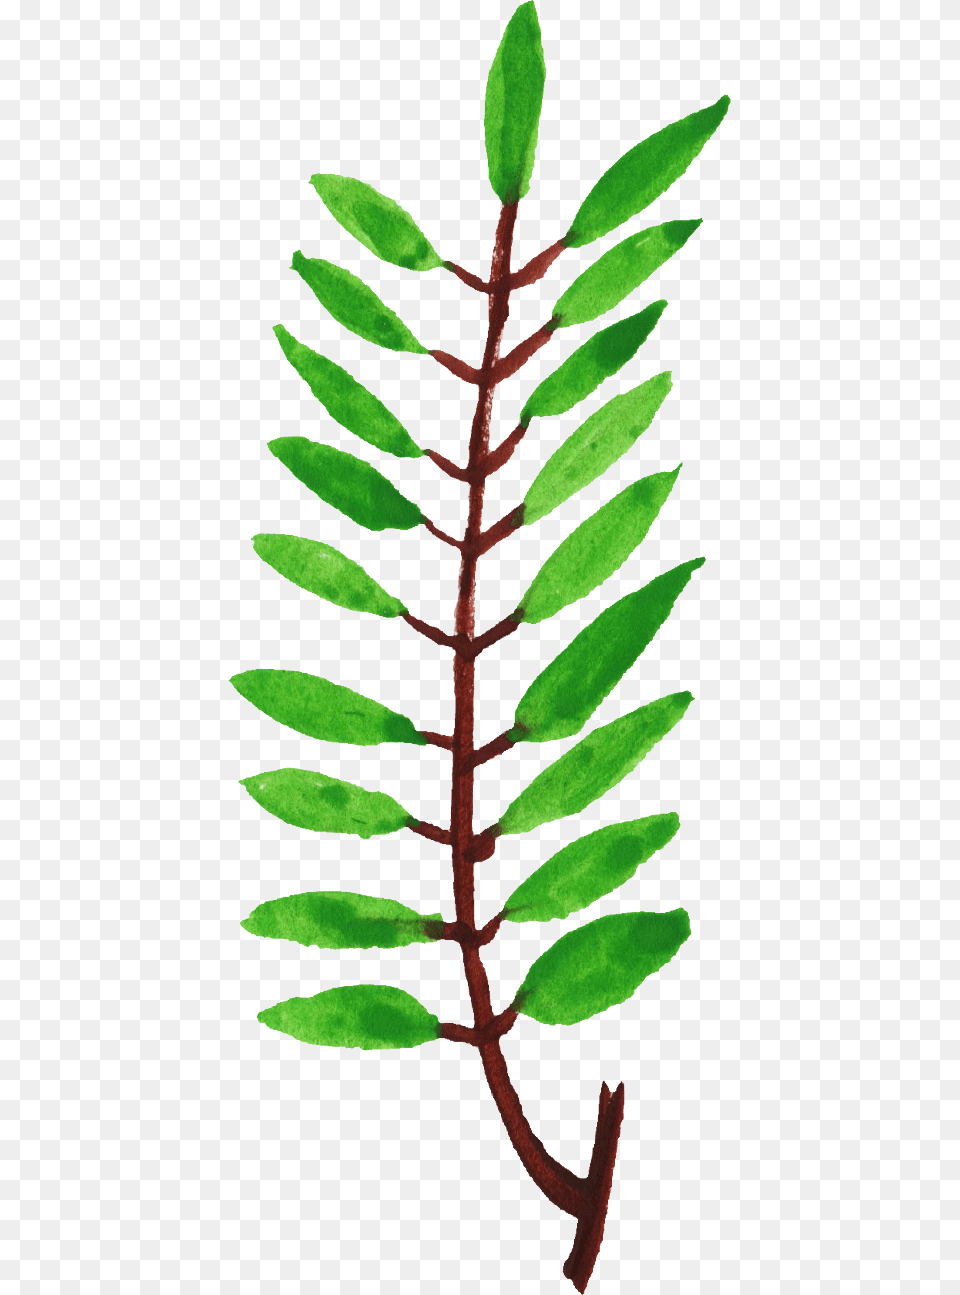 Free Download Twig, Herbal, Herbs, Leaf, Moss Png Image